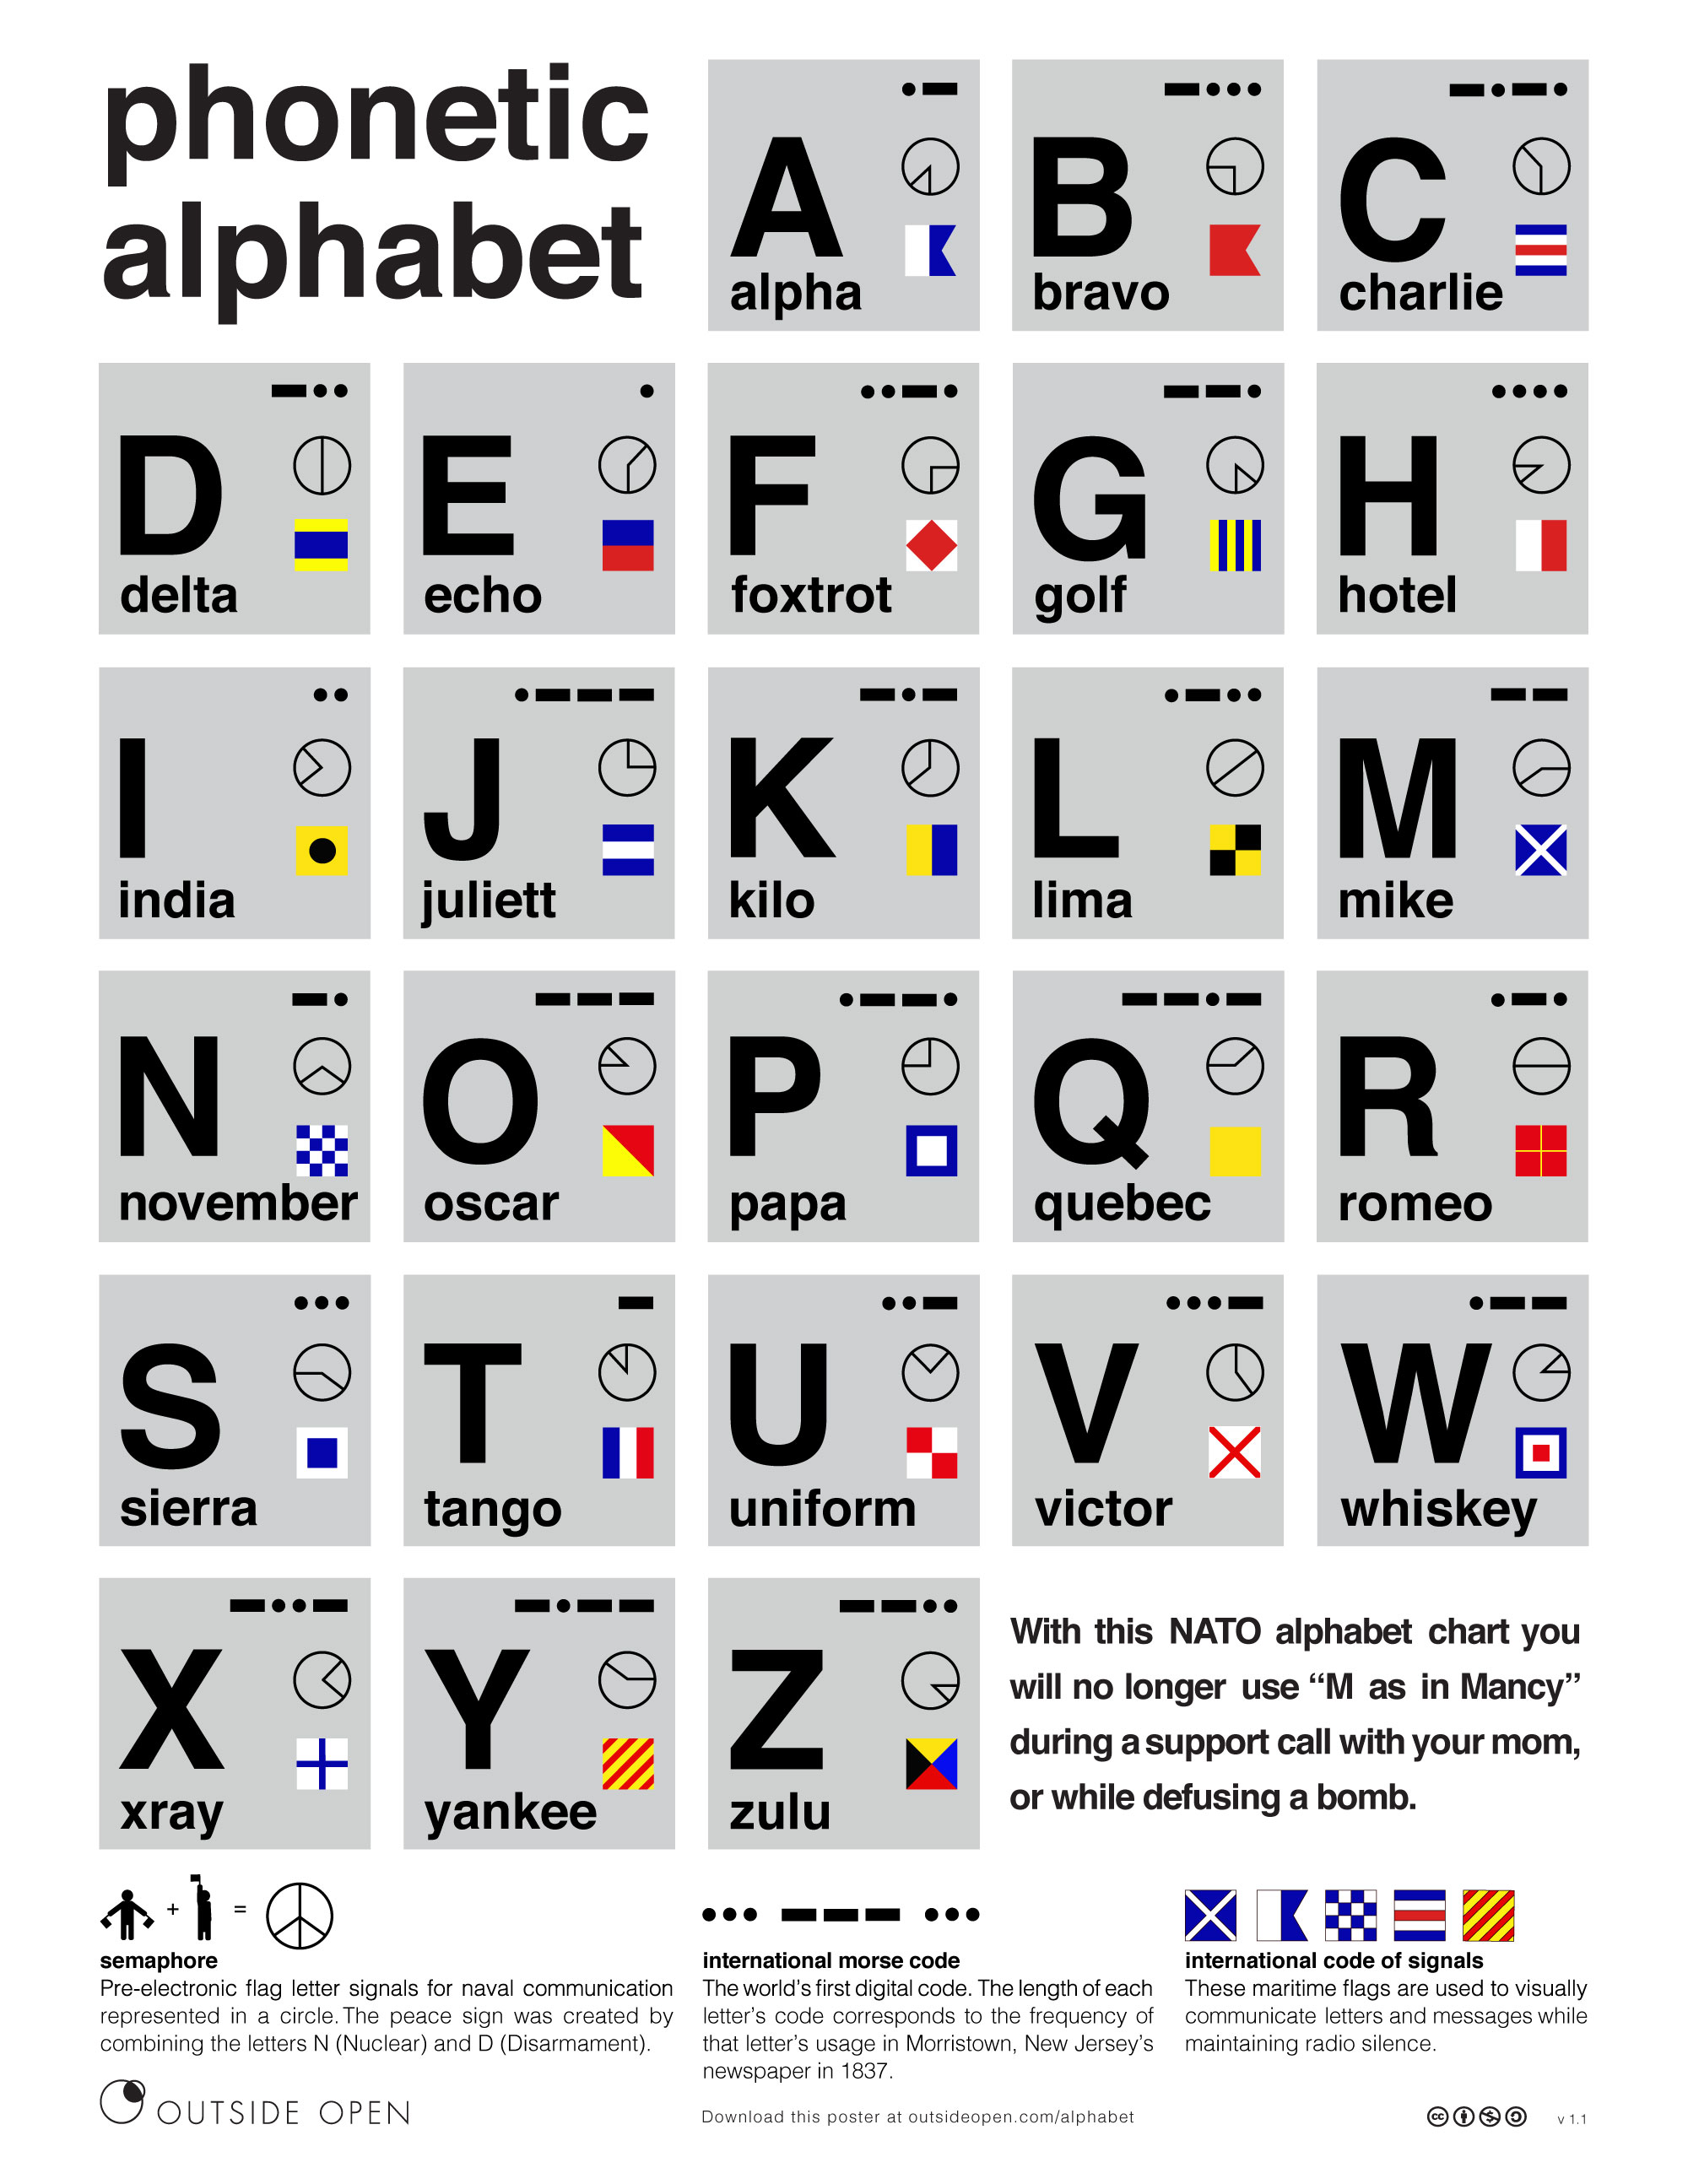 nato-phonetic-alphabet-outside-open